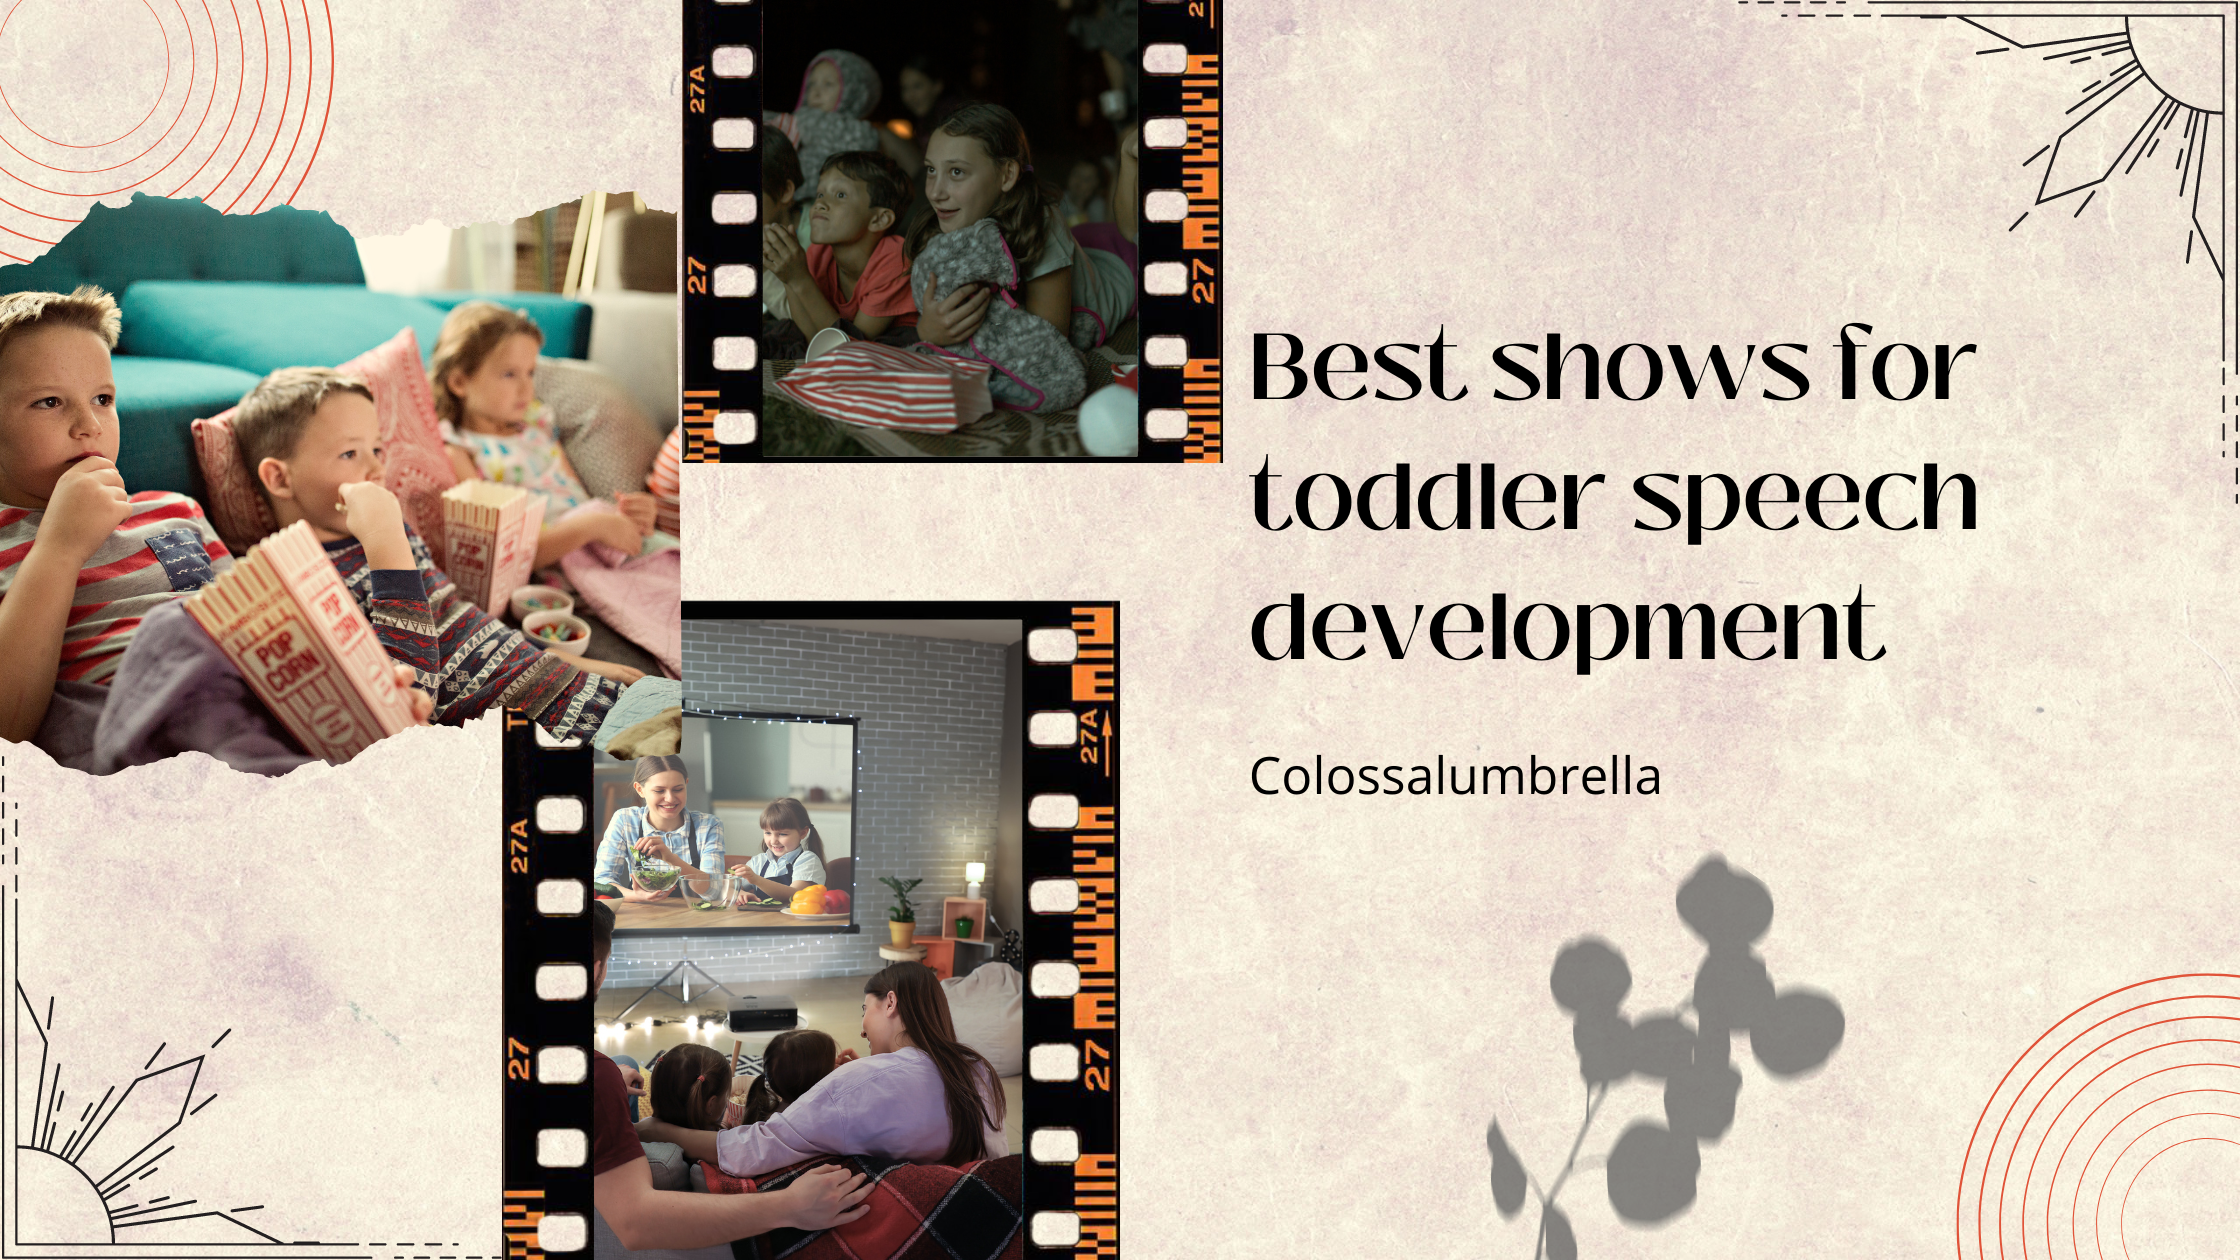 Best shows for toddler speech development